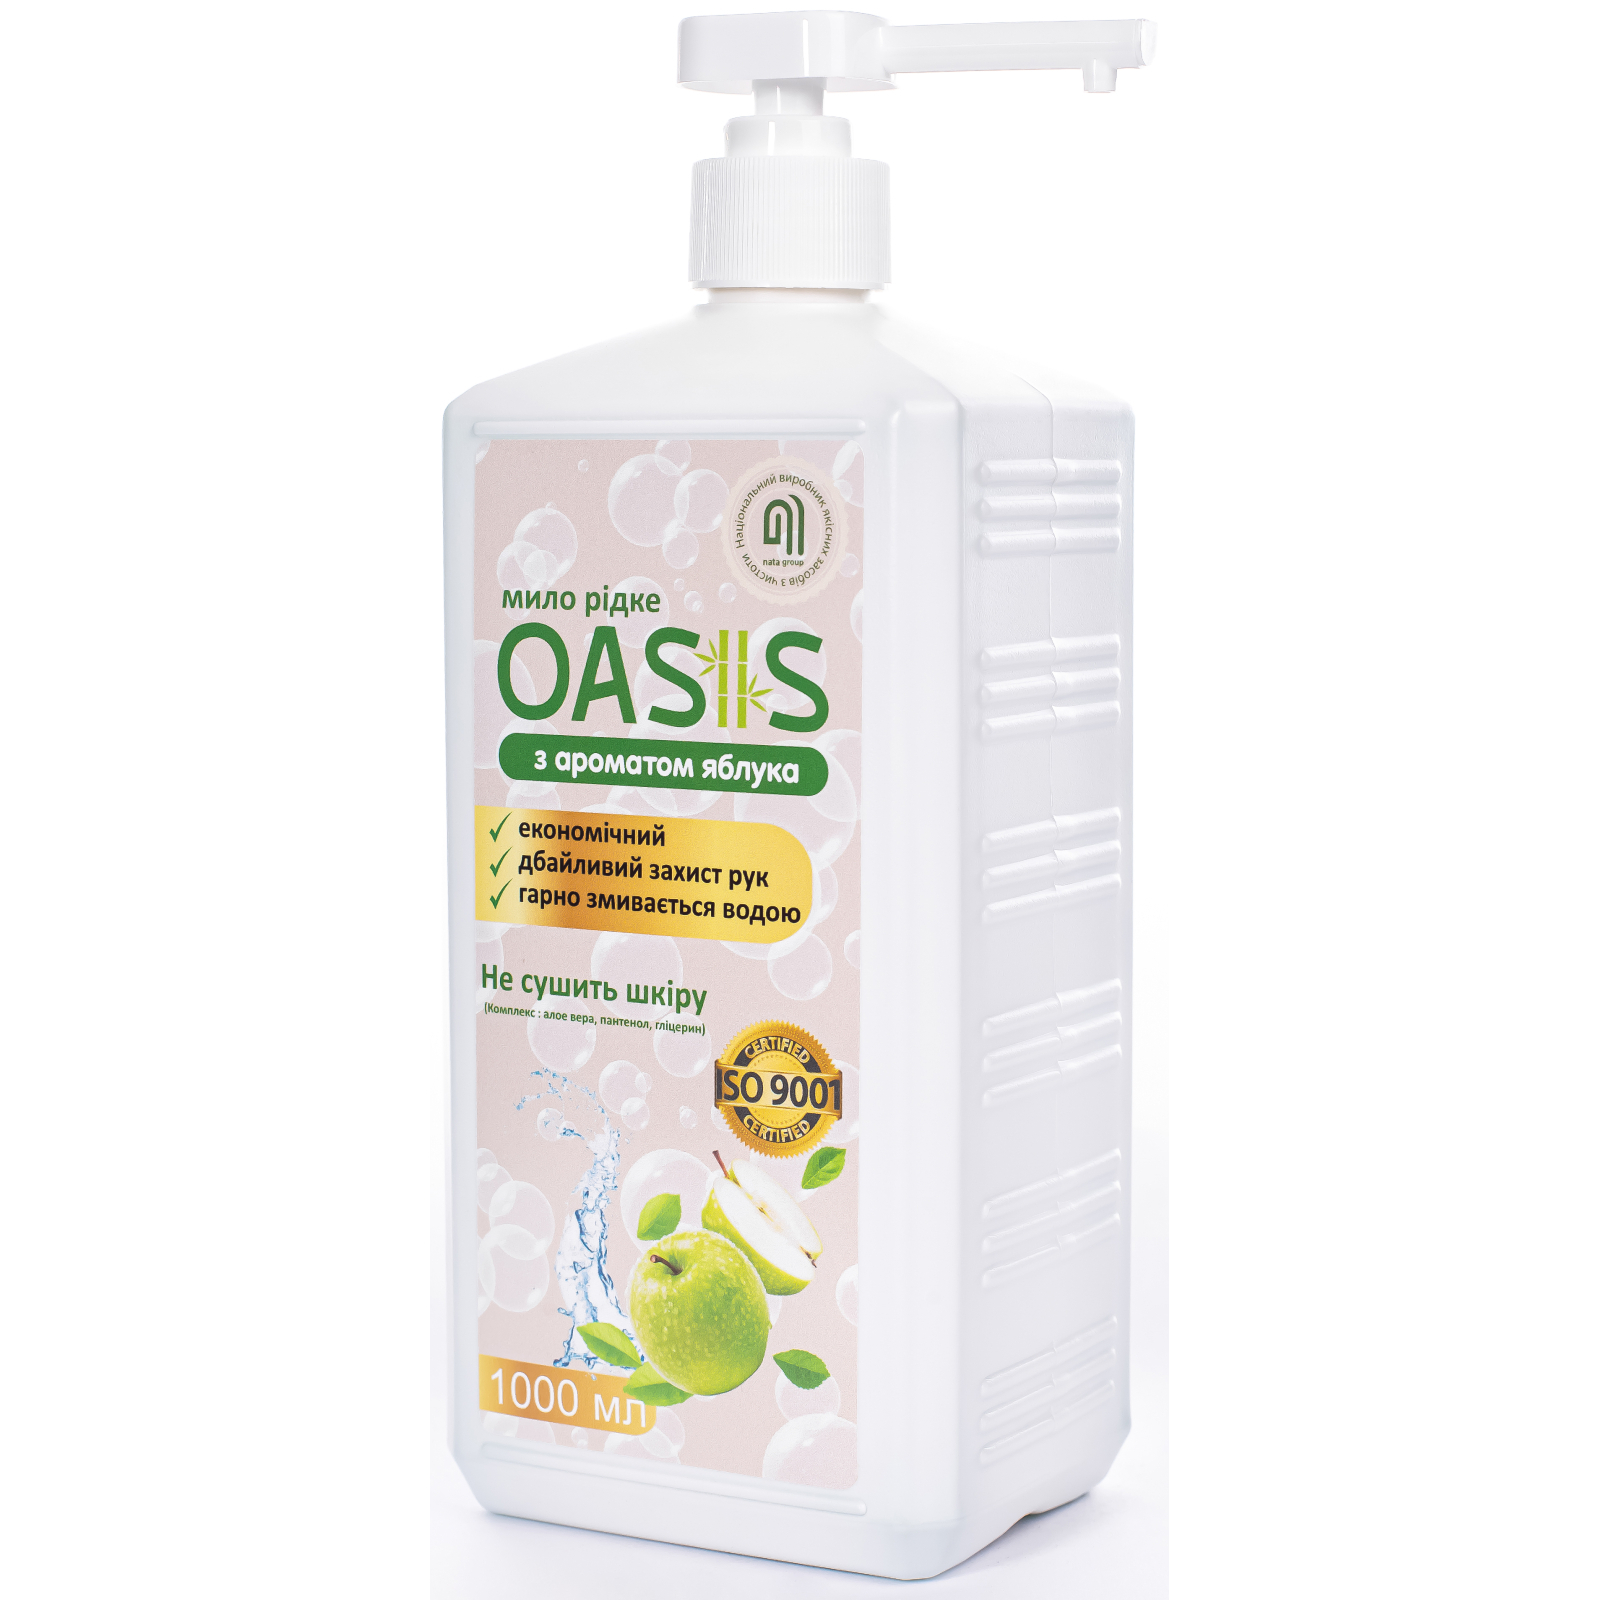 Жидкое мыло Nata Group Oasis С ароматом яблока 500 мл (4823112601103) изображение 2